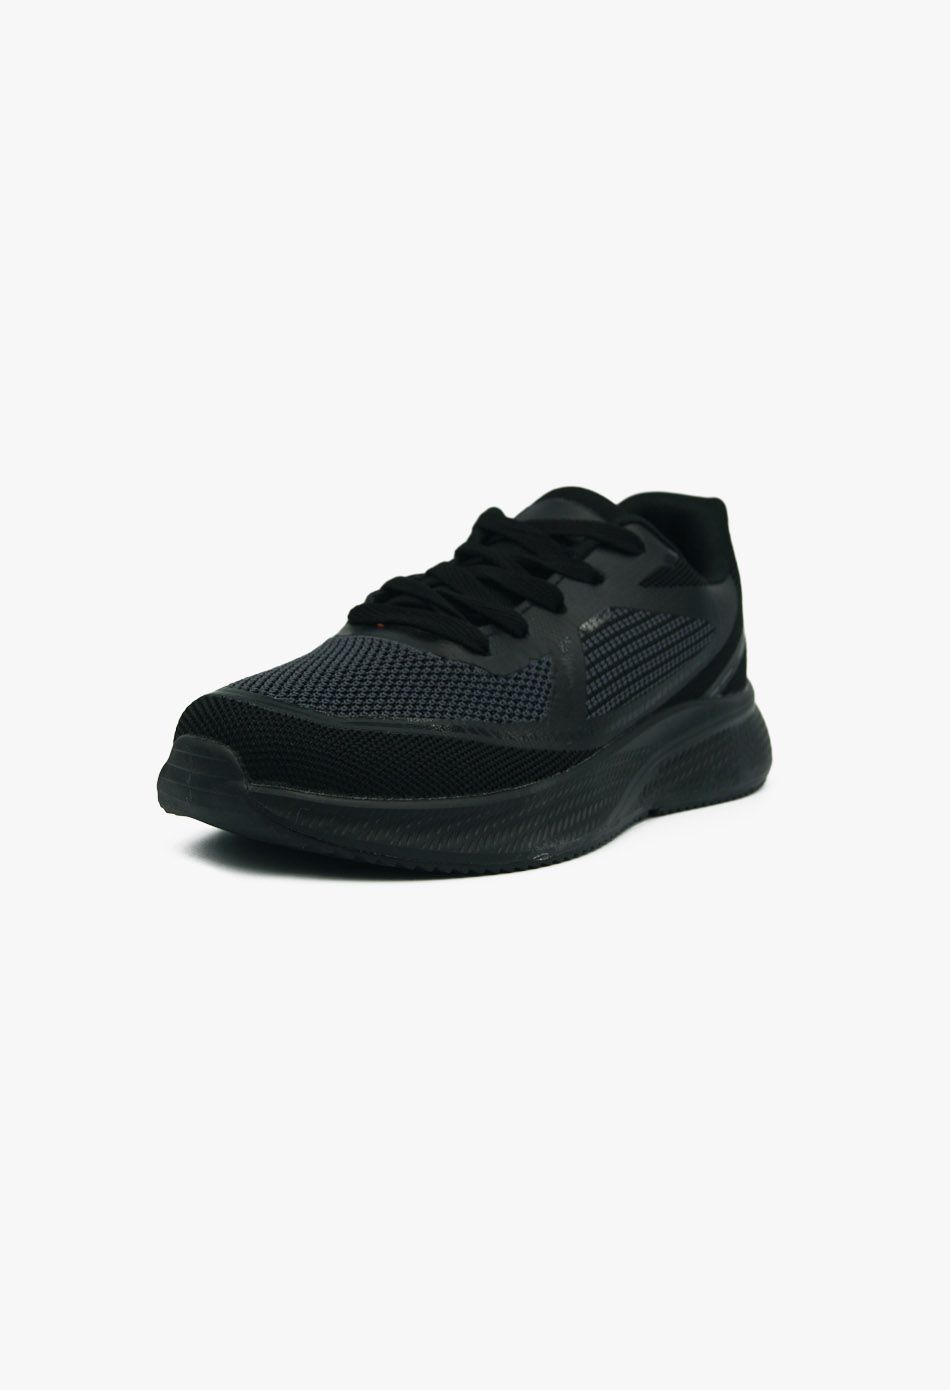 Ανδρικά Αθλητικά Παπούτσια για Τρέξιμο Μαύρο / A-49-black ΑΘΛΗΤΙΚΑ & SNEAKERS joya.gr